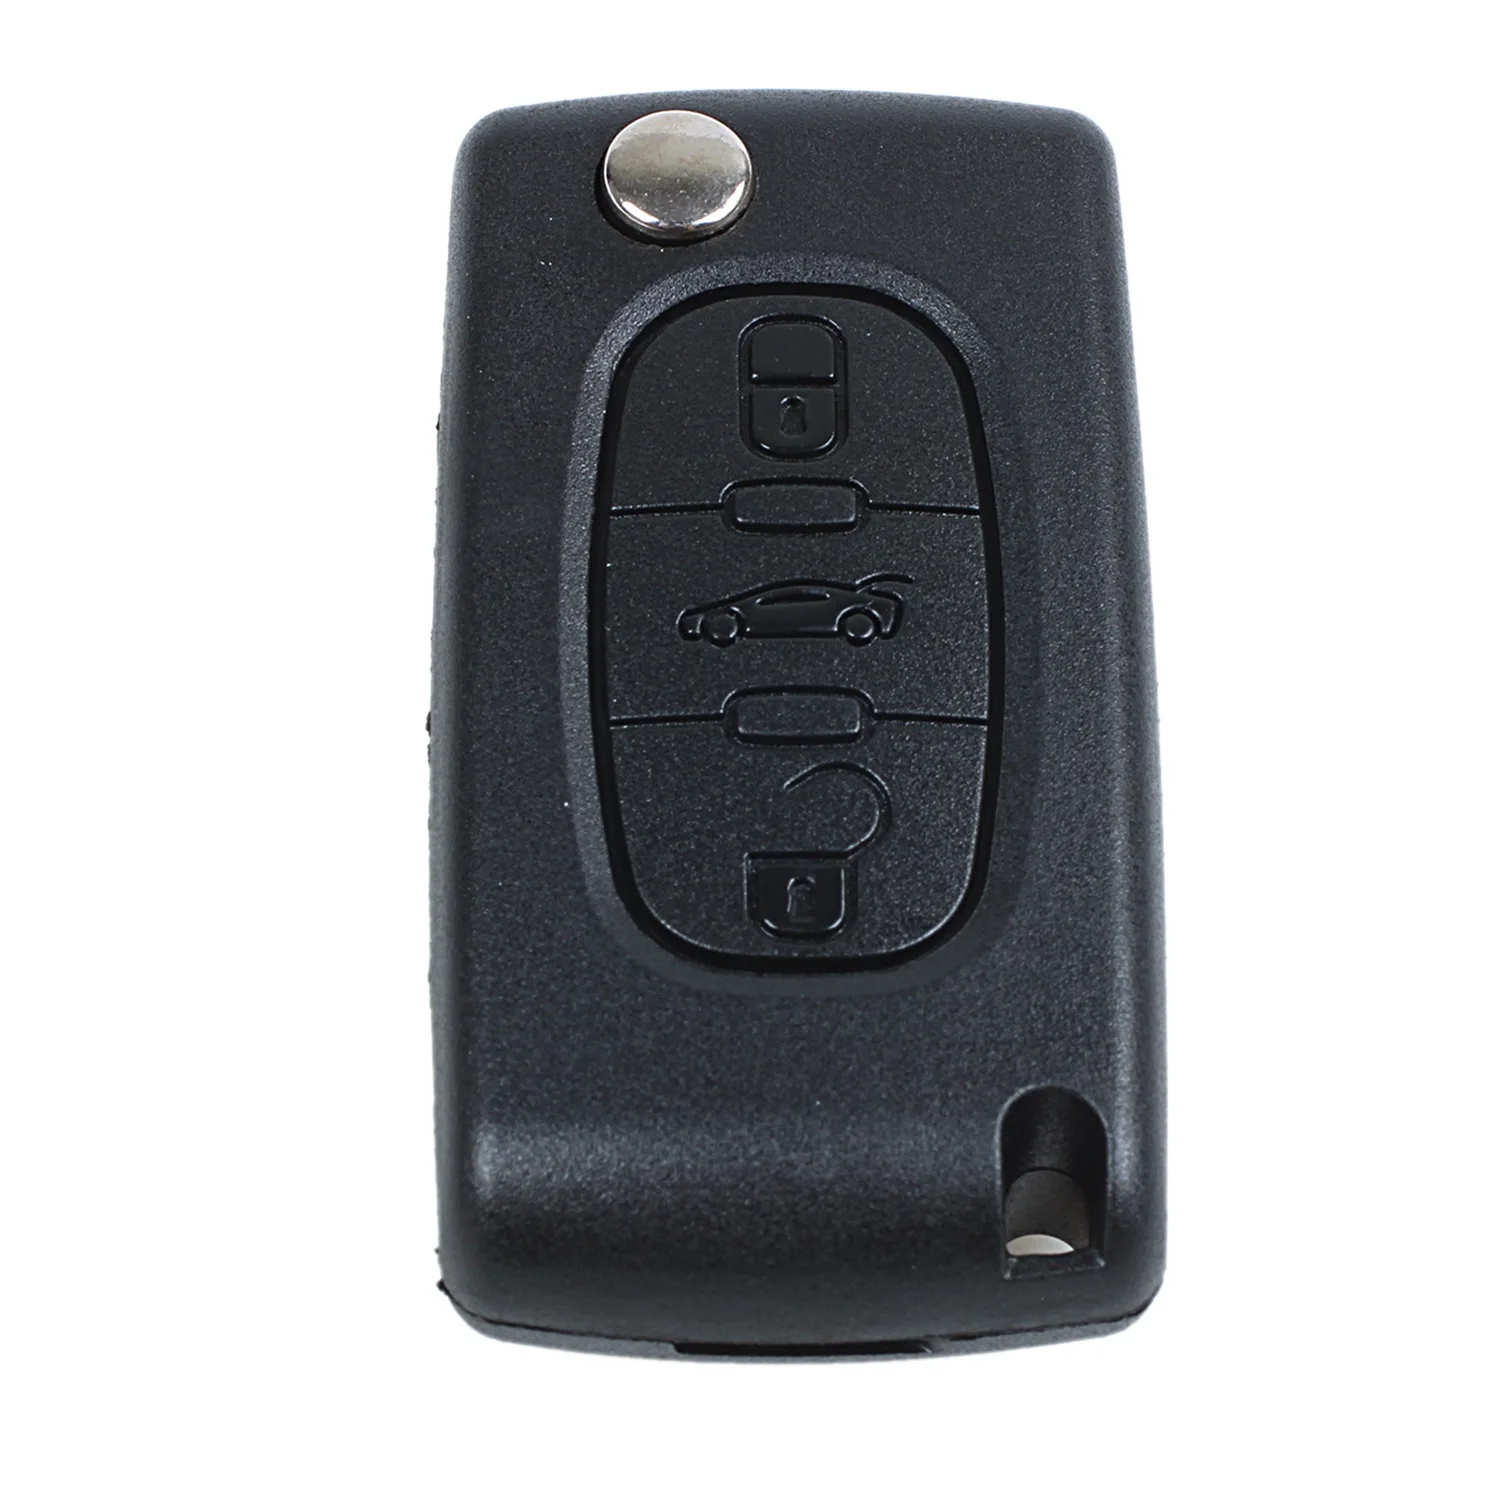 

Корпус дистанционного ключа для Peugeot 407 и 407 SW, складной, 3 кнопки